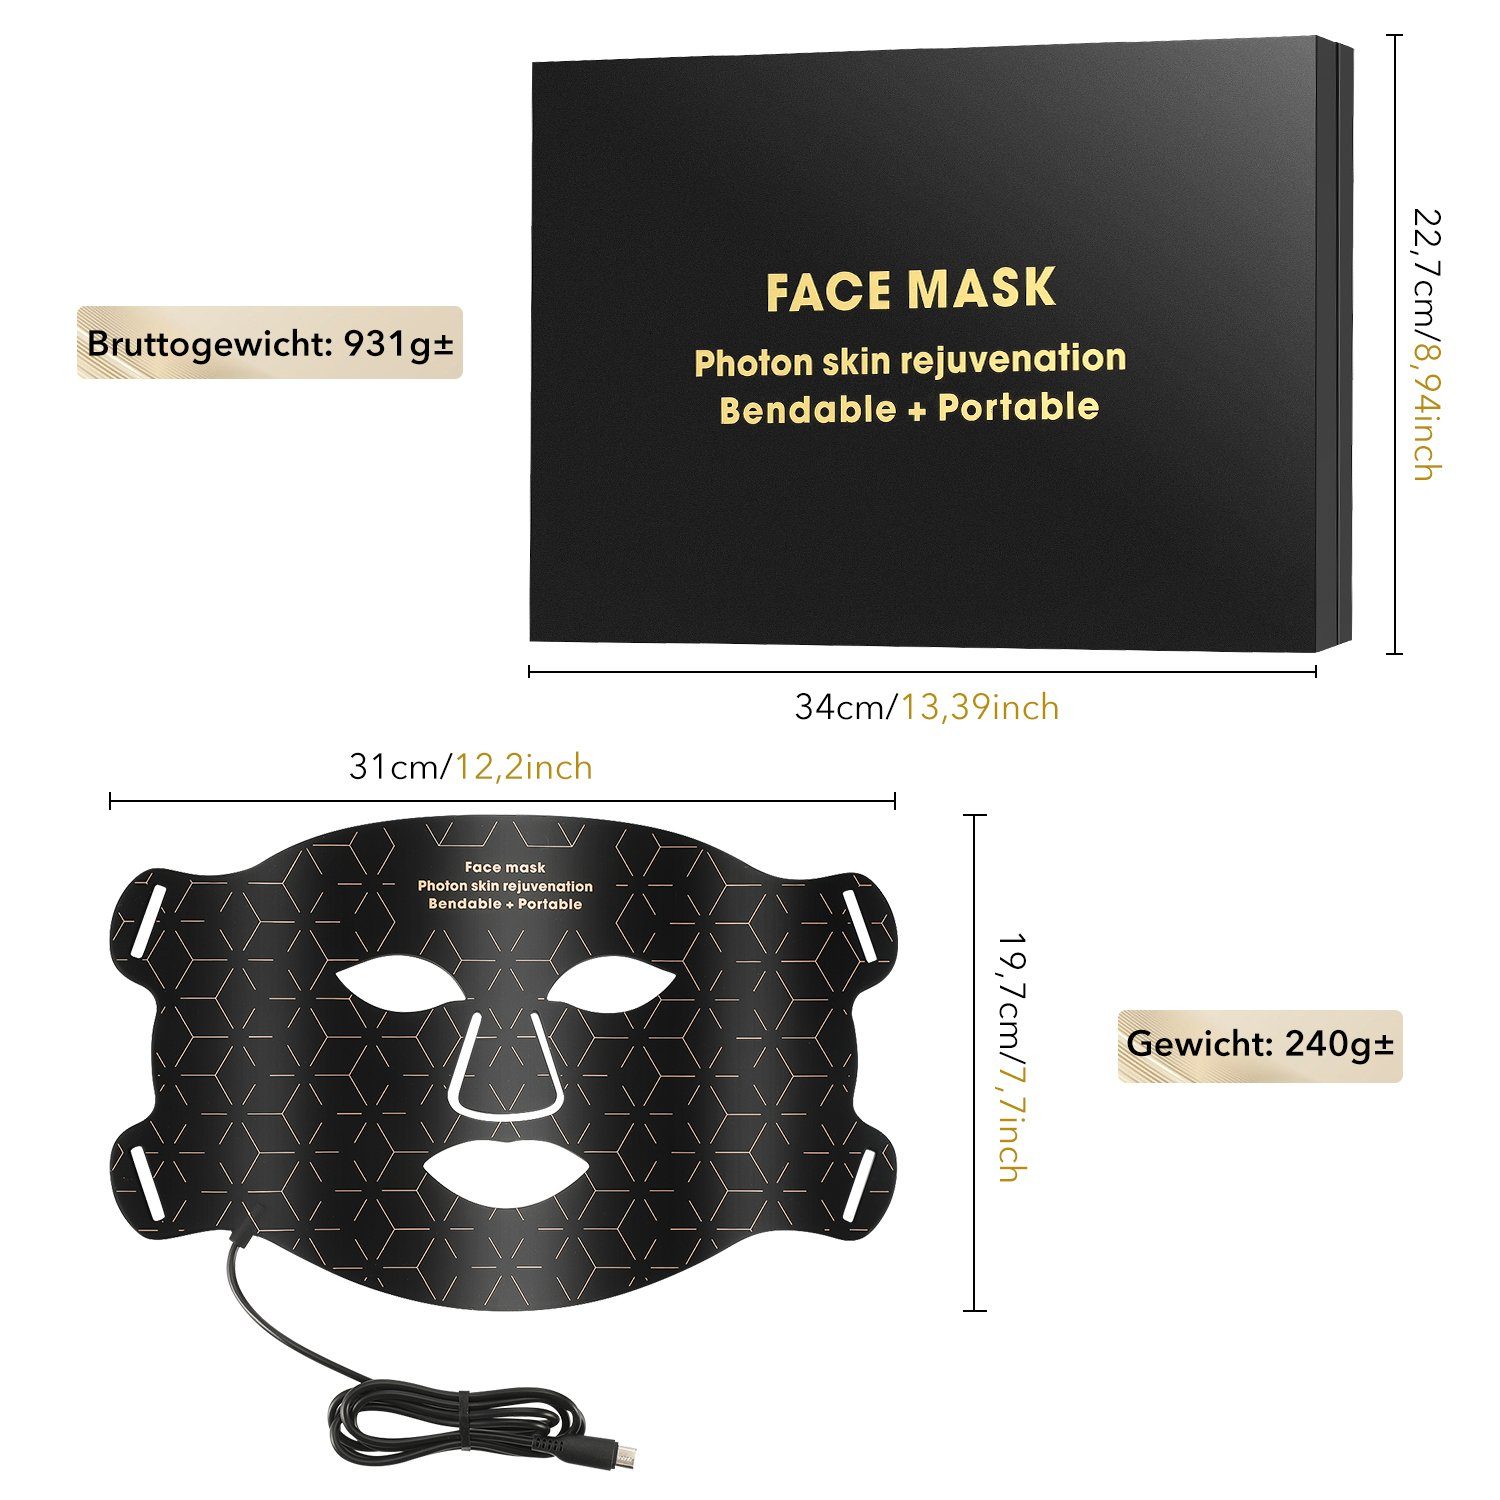 Akne oyajia Gesicht LED Falten 4 Hautverjüngung Gesichtsmasken Kosmetikbehandlungsgerät Anti Anti Lichttherapie,Photonen-Hautverjüngung für Anti-Aging Farben maske,